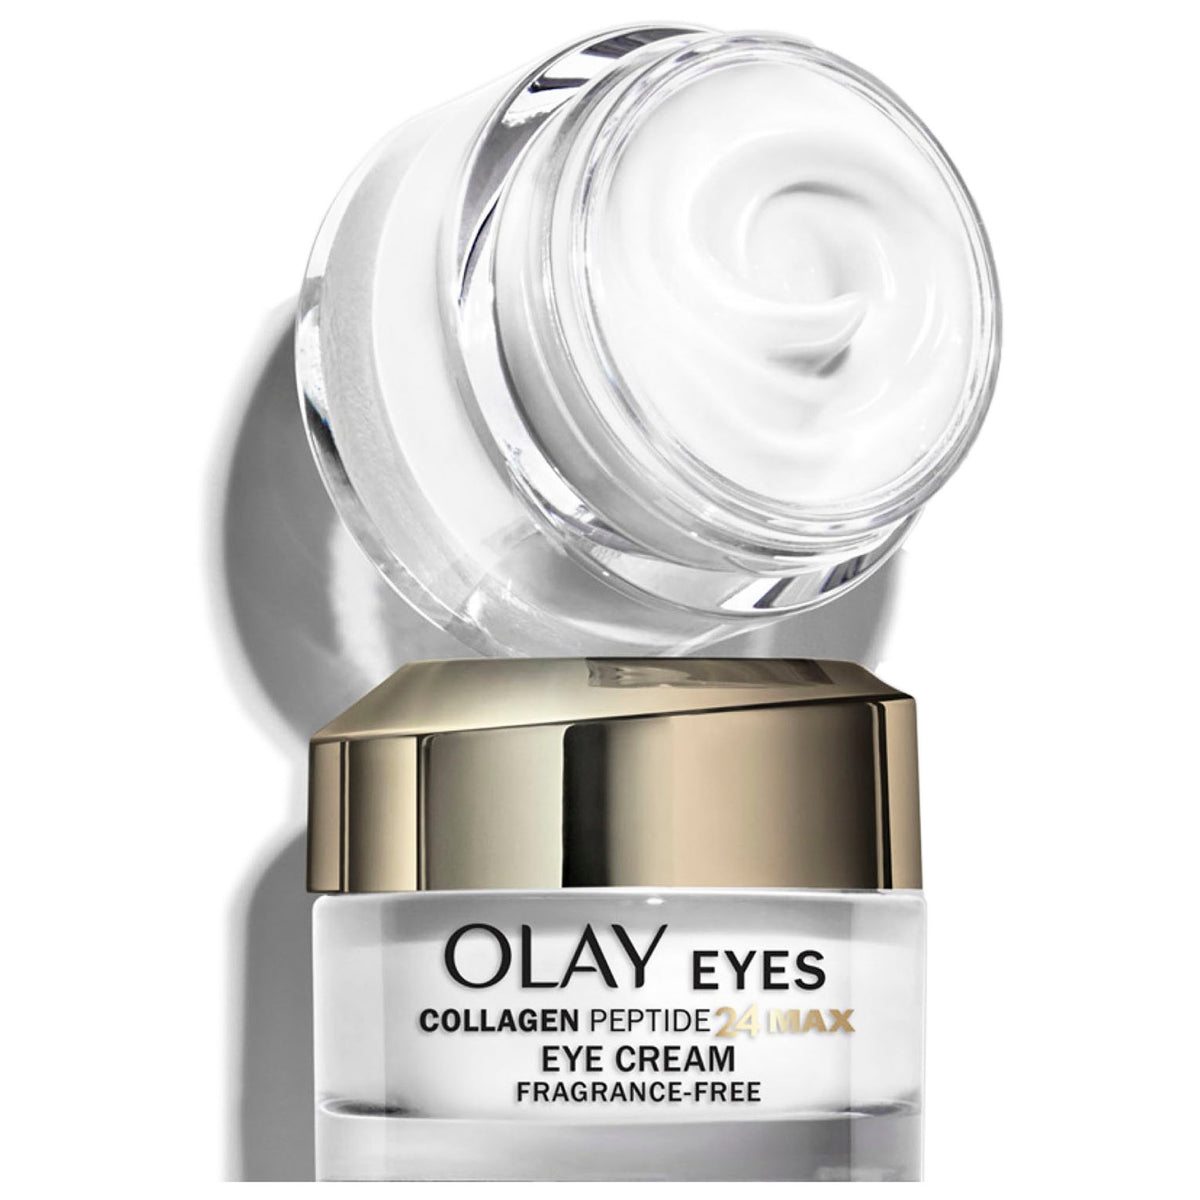 Olay Collagen Peptide 24 Eye Cream có thể giúp làm thay đổi diện mạo làn da như thế nào?
